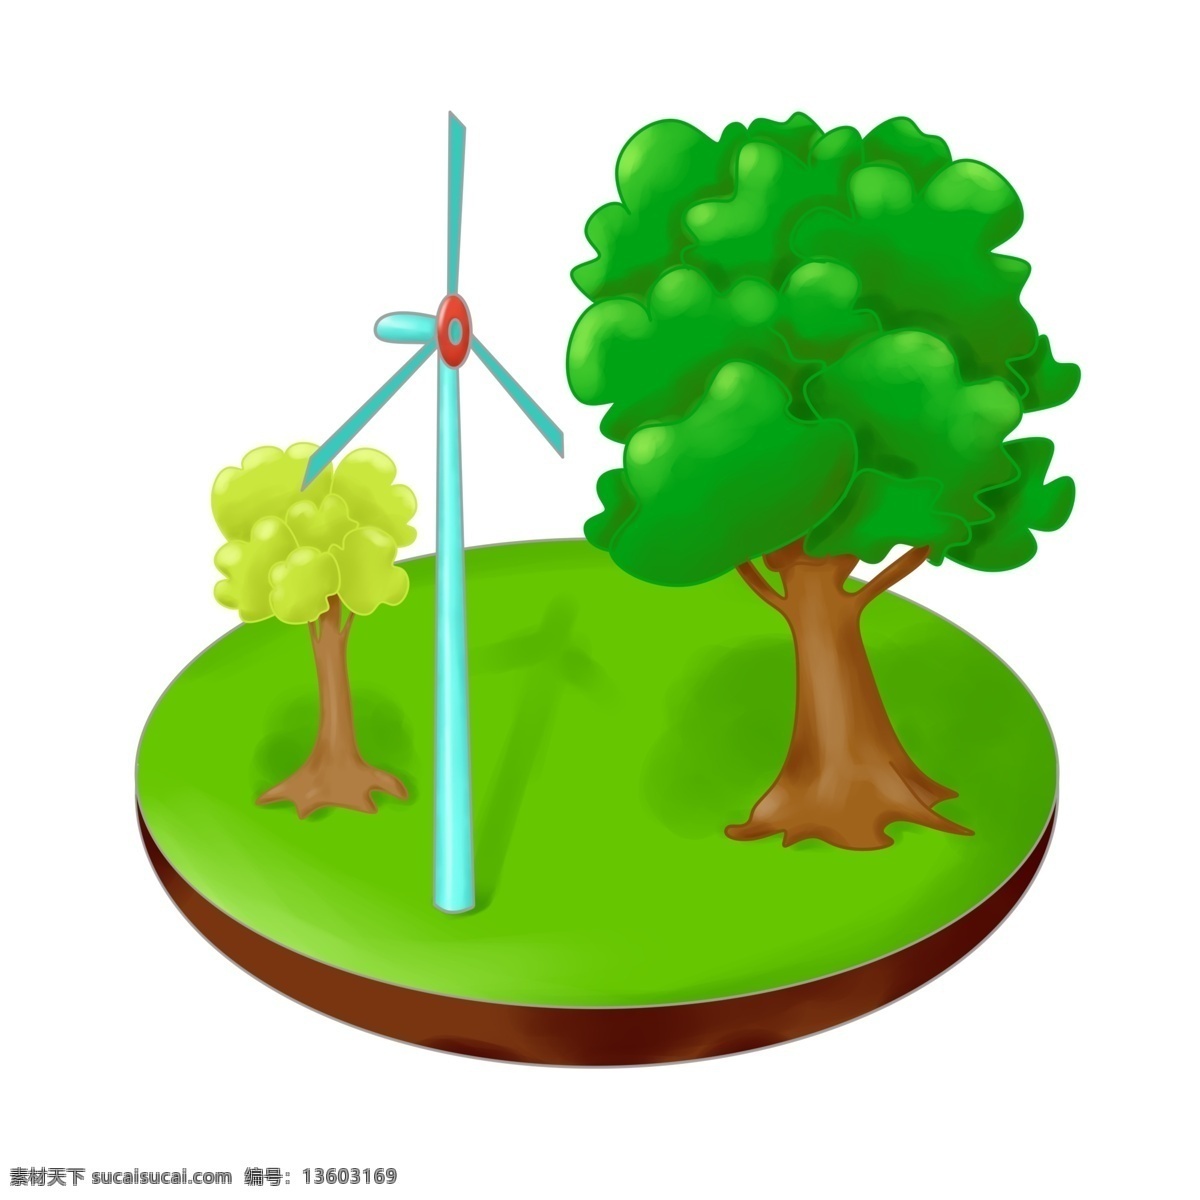 蓝色 风车 装饰 插画 蓝色的风车 绿色的草地 绿色的树木 绿色的叶子 环保的风车 风车的插画